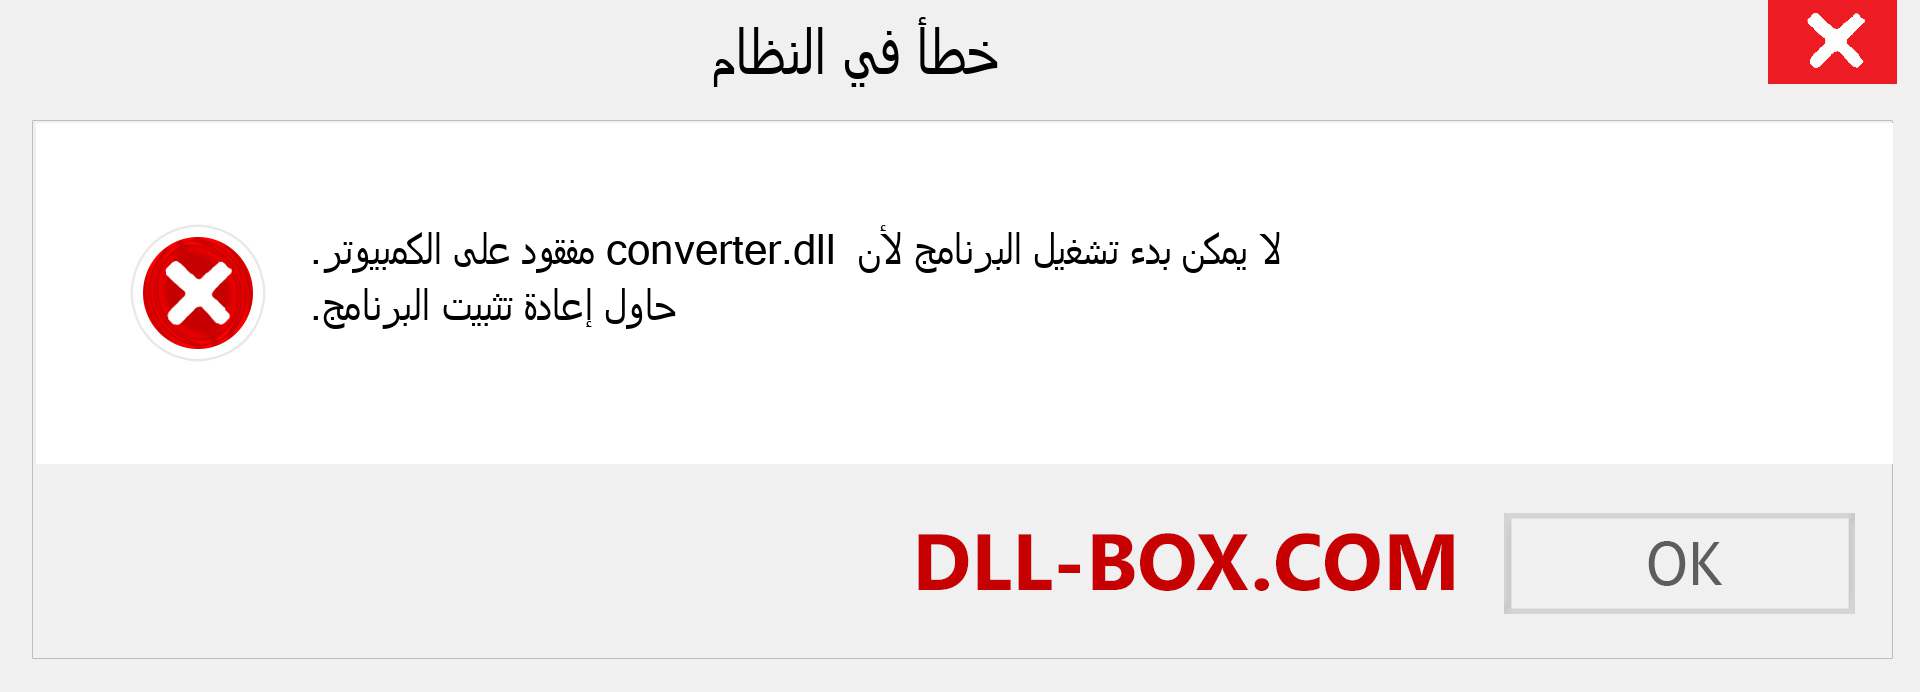 ملف converter.dll مفقود ؟. التنزيل لنظام التشغيل Windows 7 و 8 و 10 - إصلاح خطأ converter dll المفقود على Windows والصور والصور